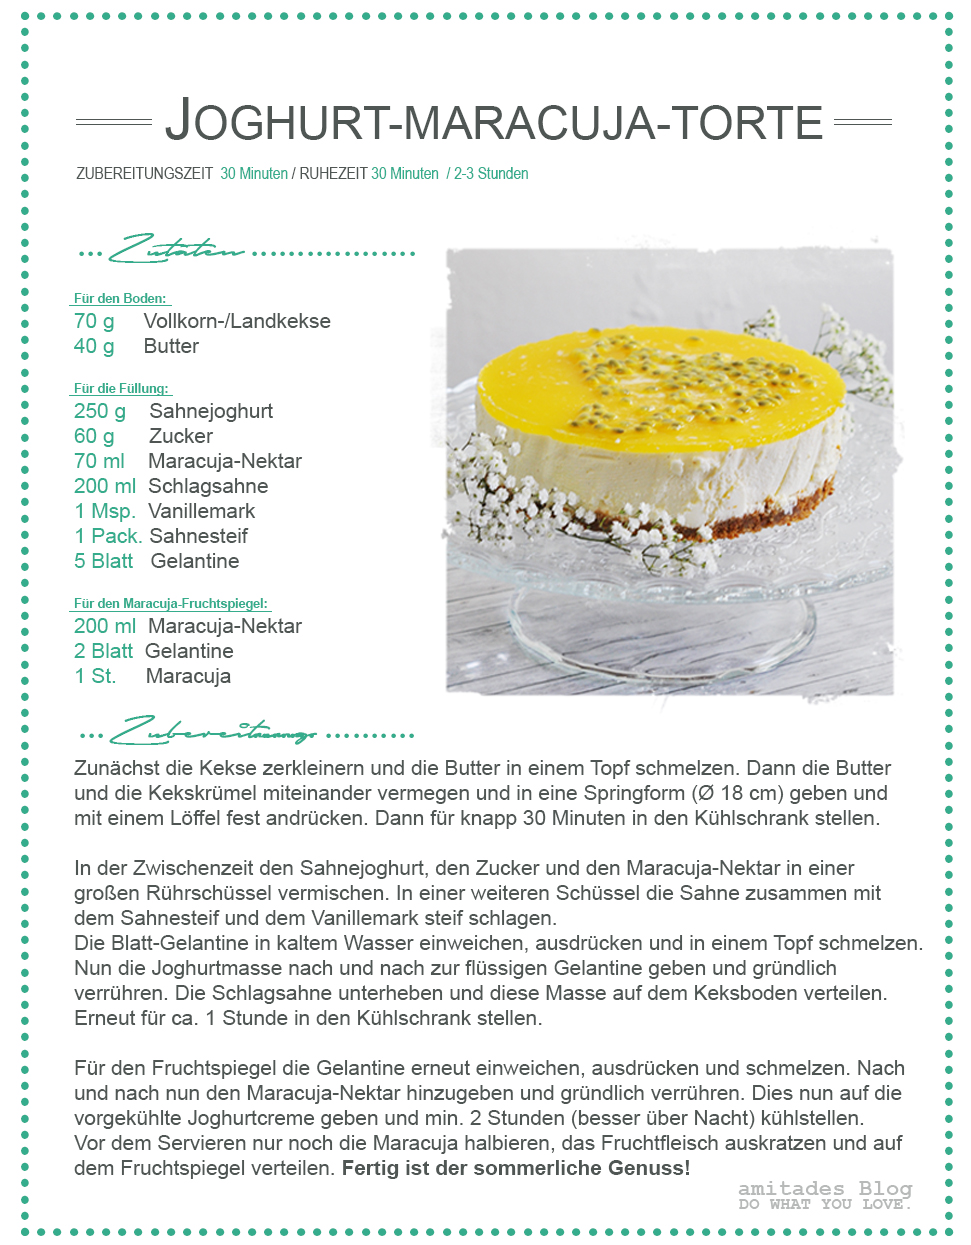 amitades.Blog | Rezept Joghurt-Maracuja-Torte